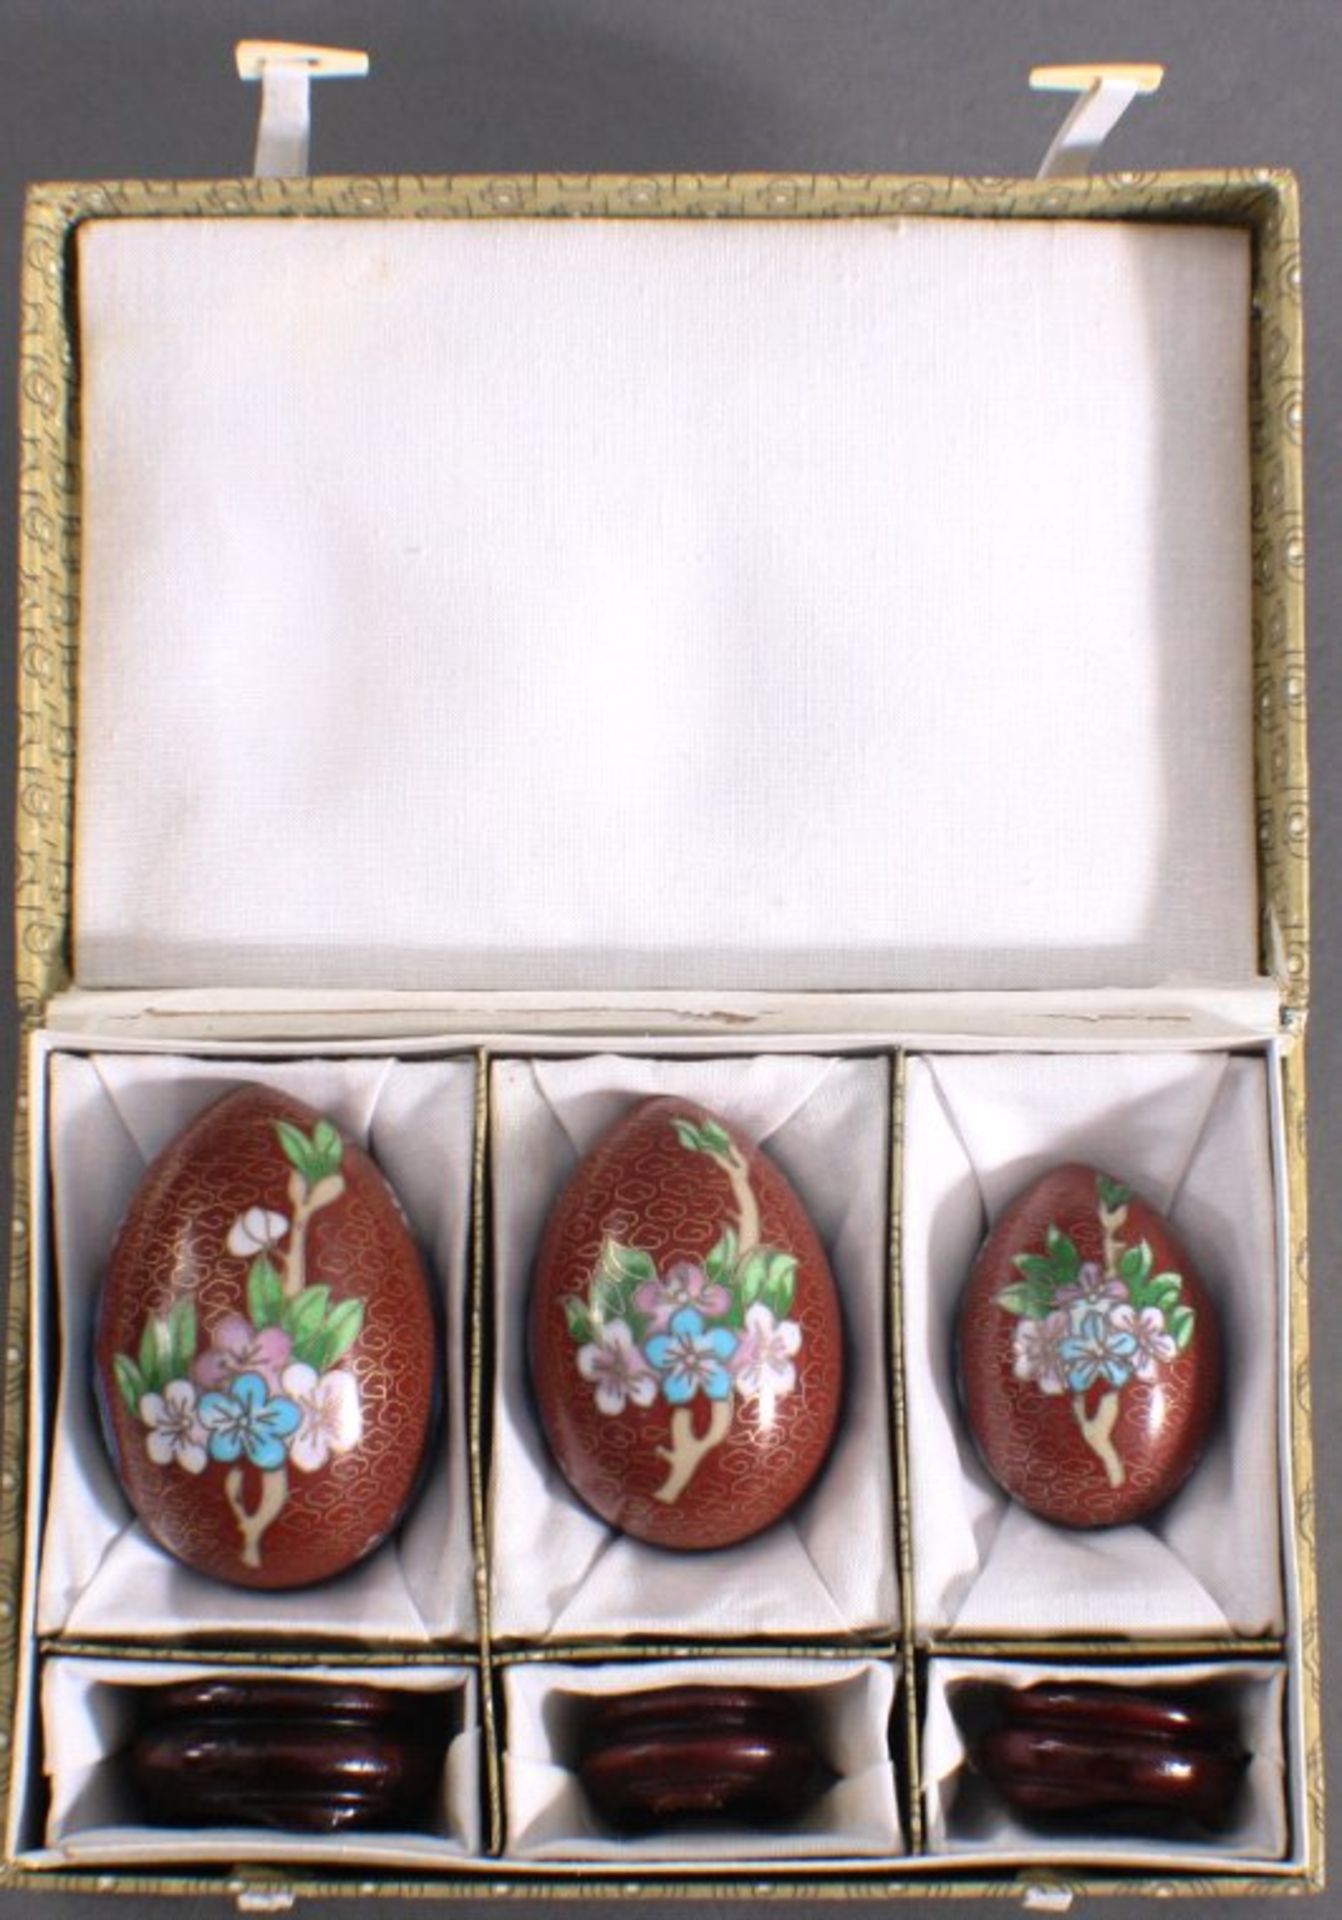 3 Cloisonne Eier, China 20. Jh.In 3 unterschiedlichen Größen von Höhe 5, 6 und 7 cm, mitHolzständer, - Image 2 of 3